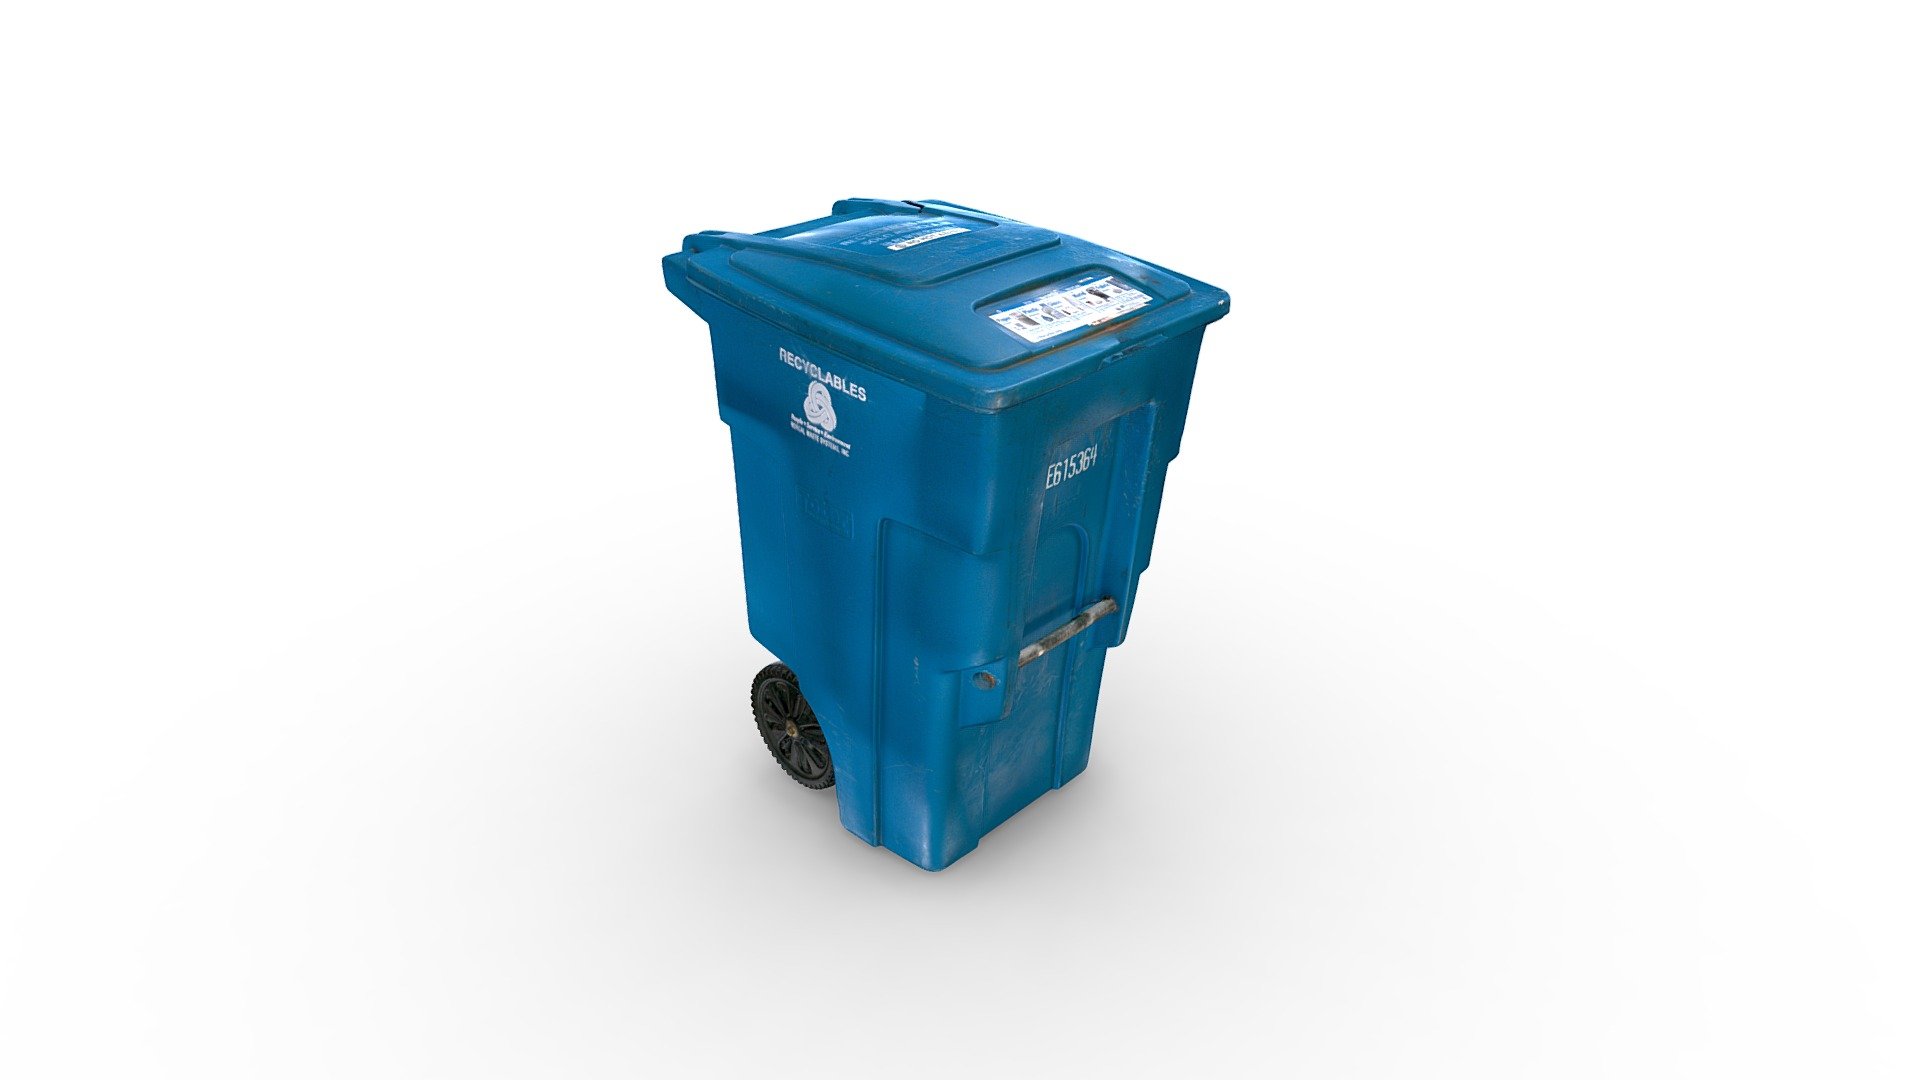 3D Scan of a recycling bin - Recycling Bin - Buy Royalty Free 3D model by chrisprice 3d model